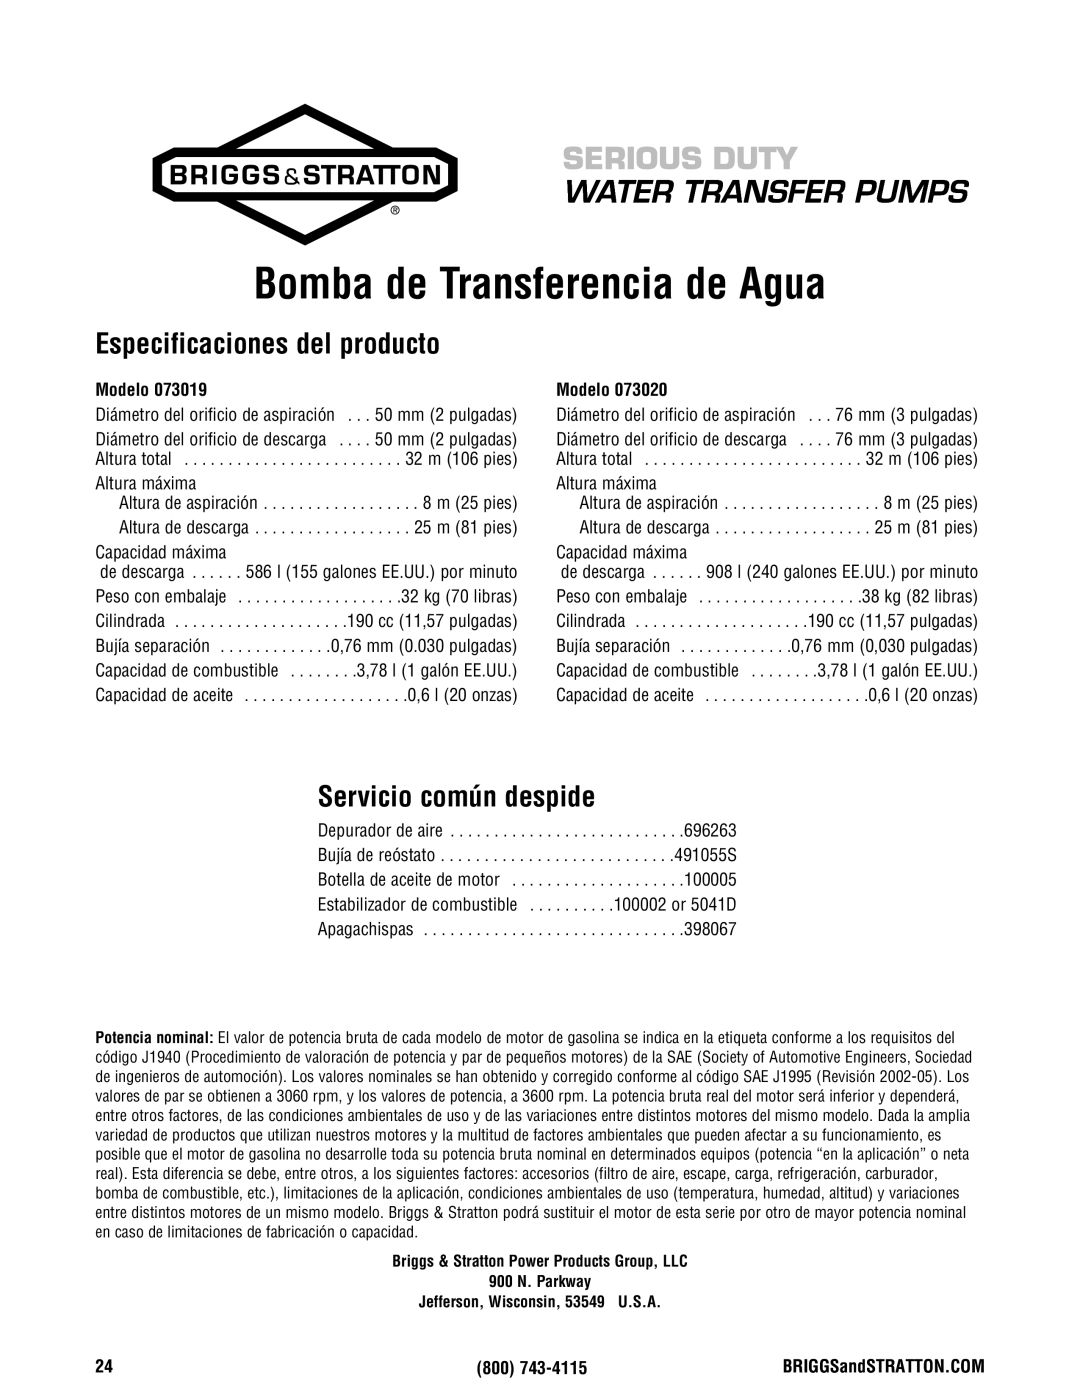 Briggs & Stratton Water Transfer Pump manual Especificaciones del producto, Servicio común despide, Modelo 